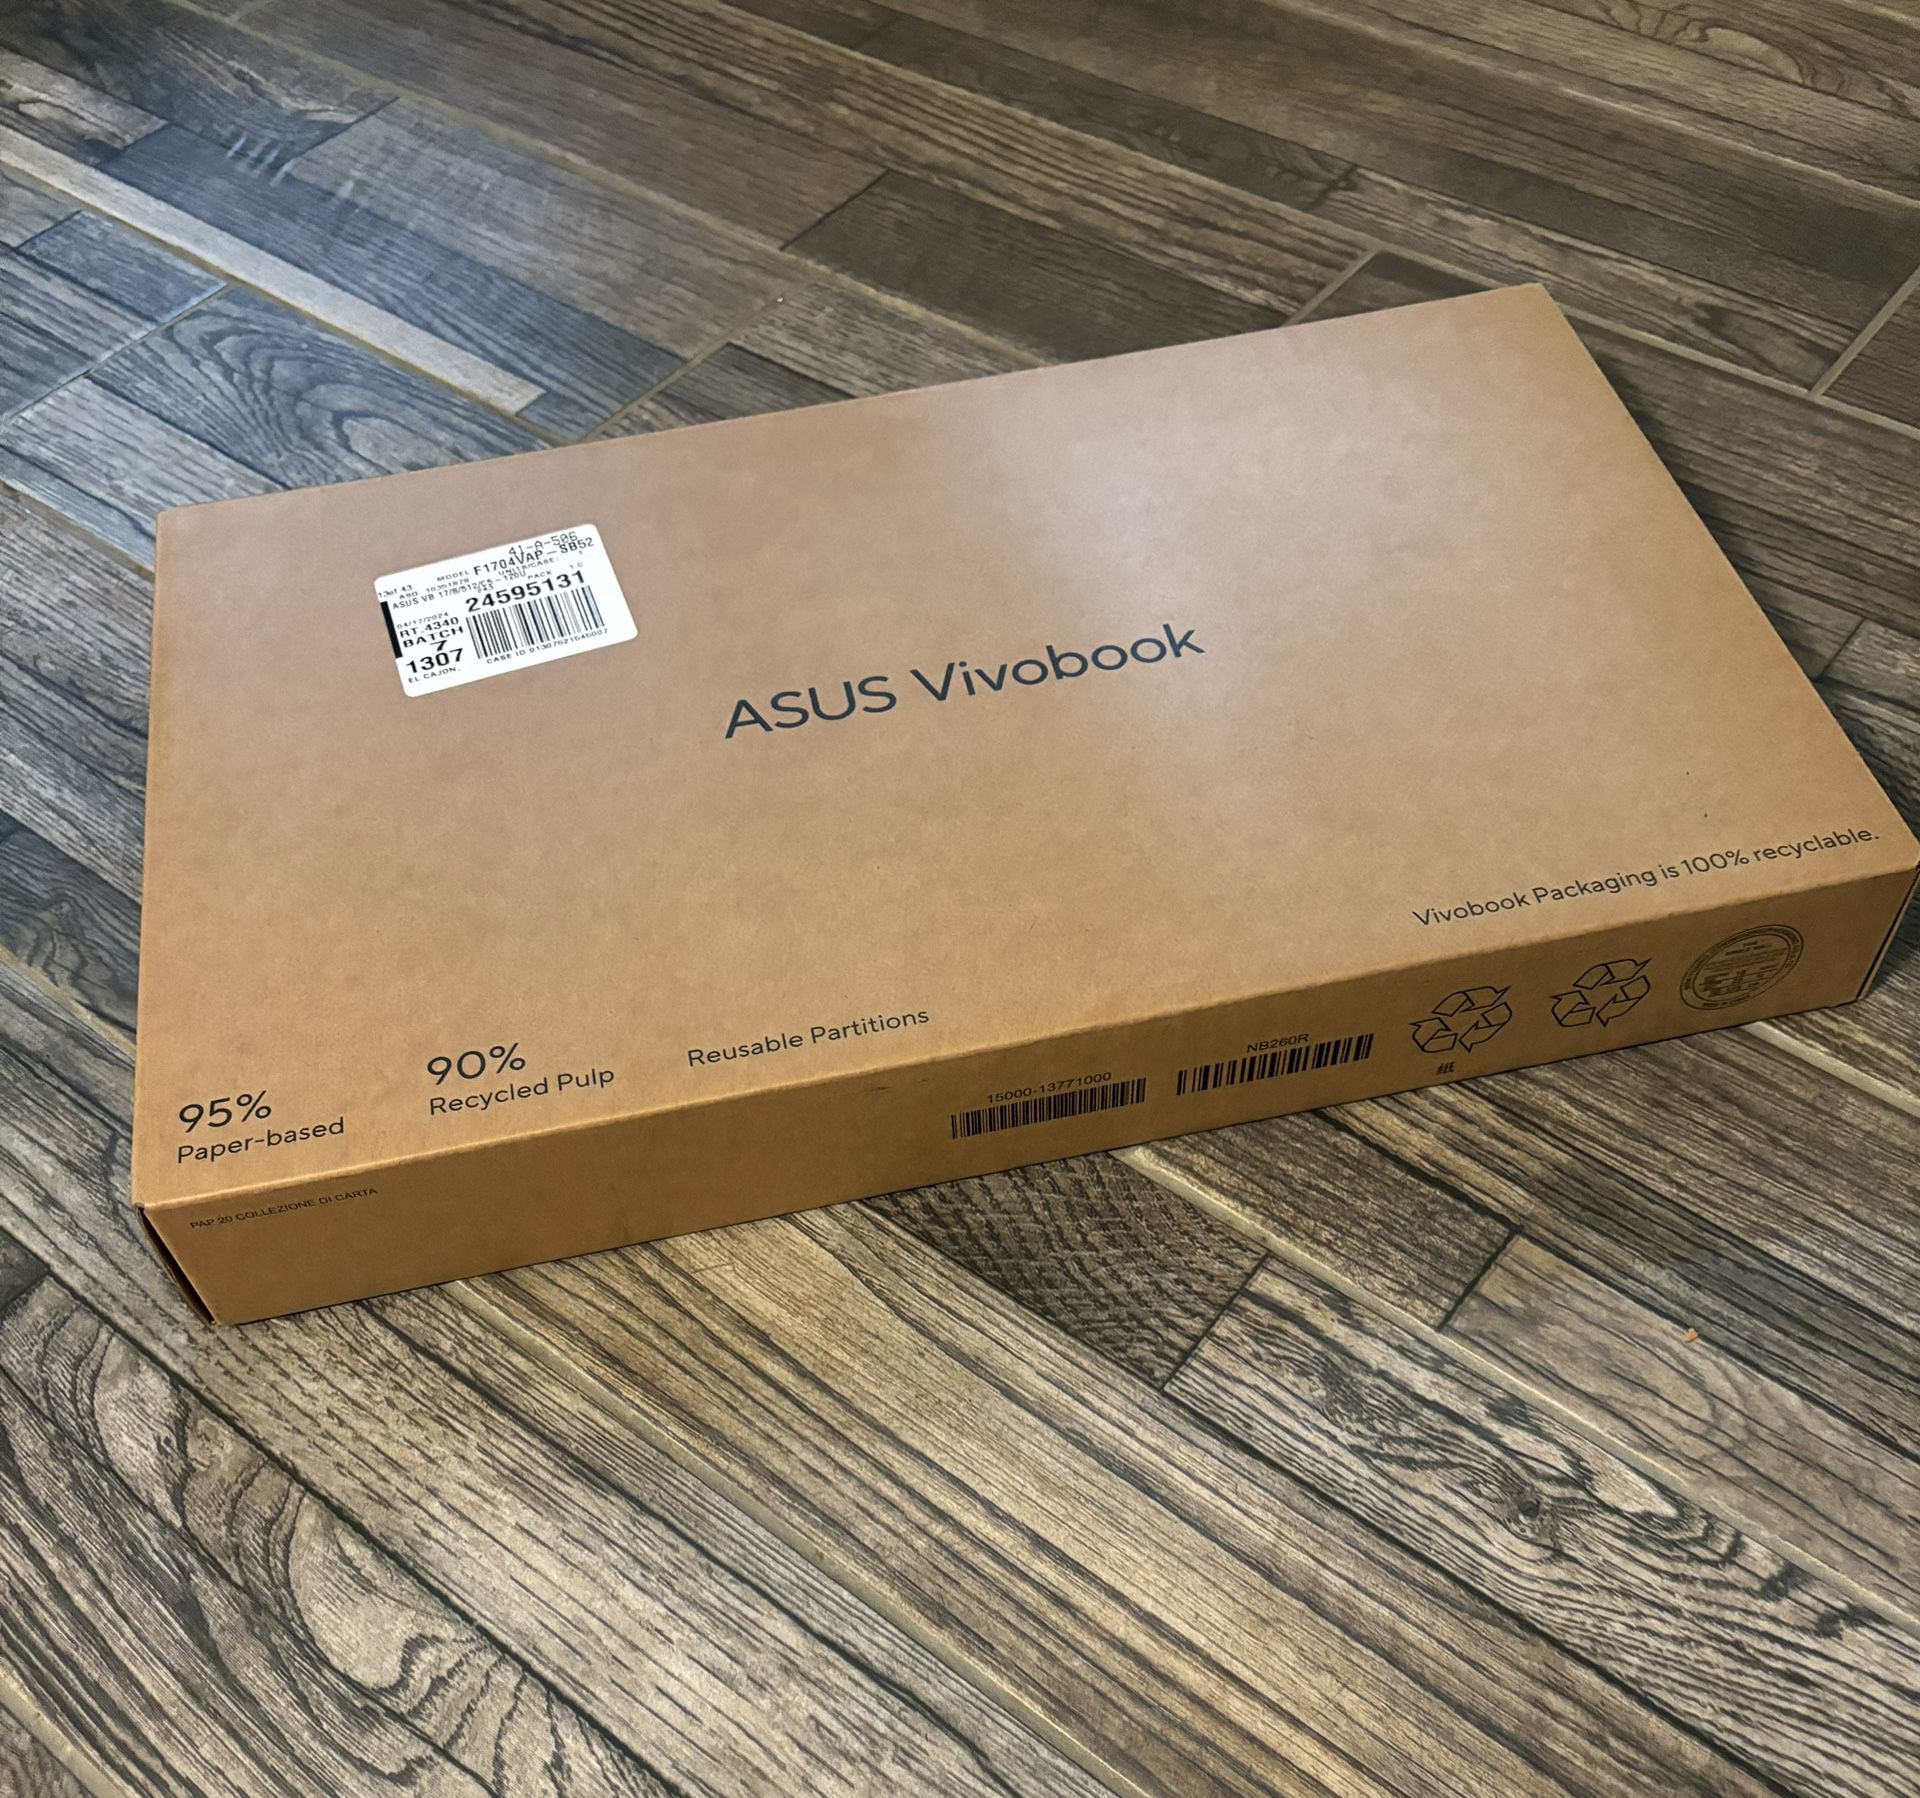 ASUS vivobook laptop New In Box 